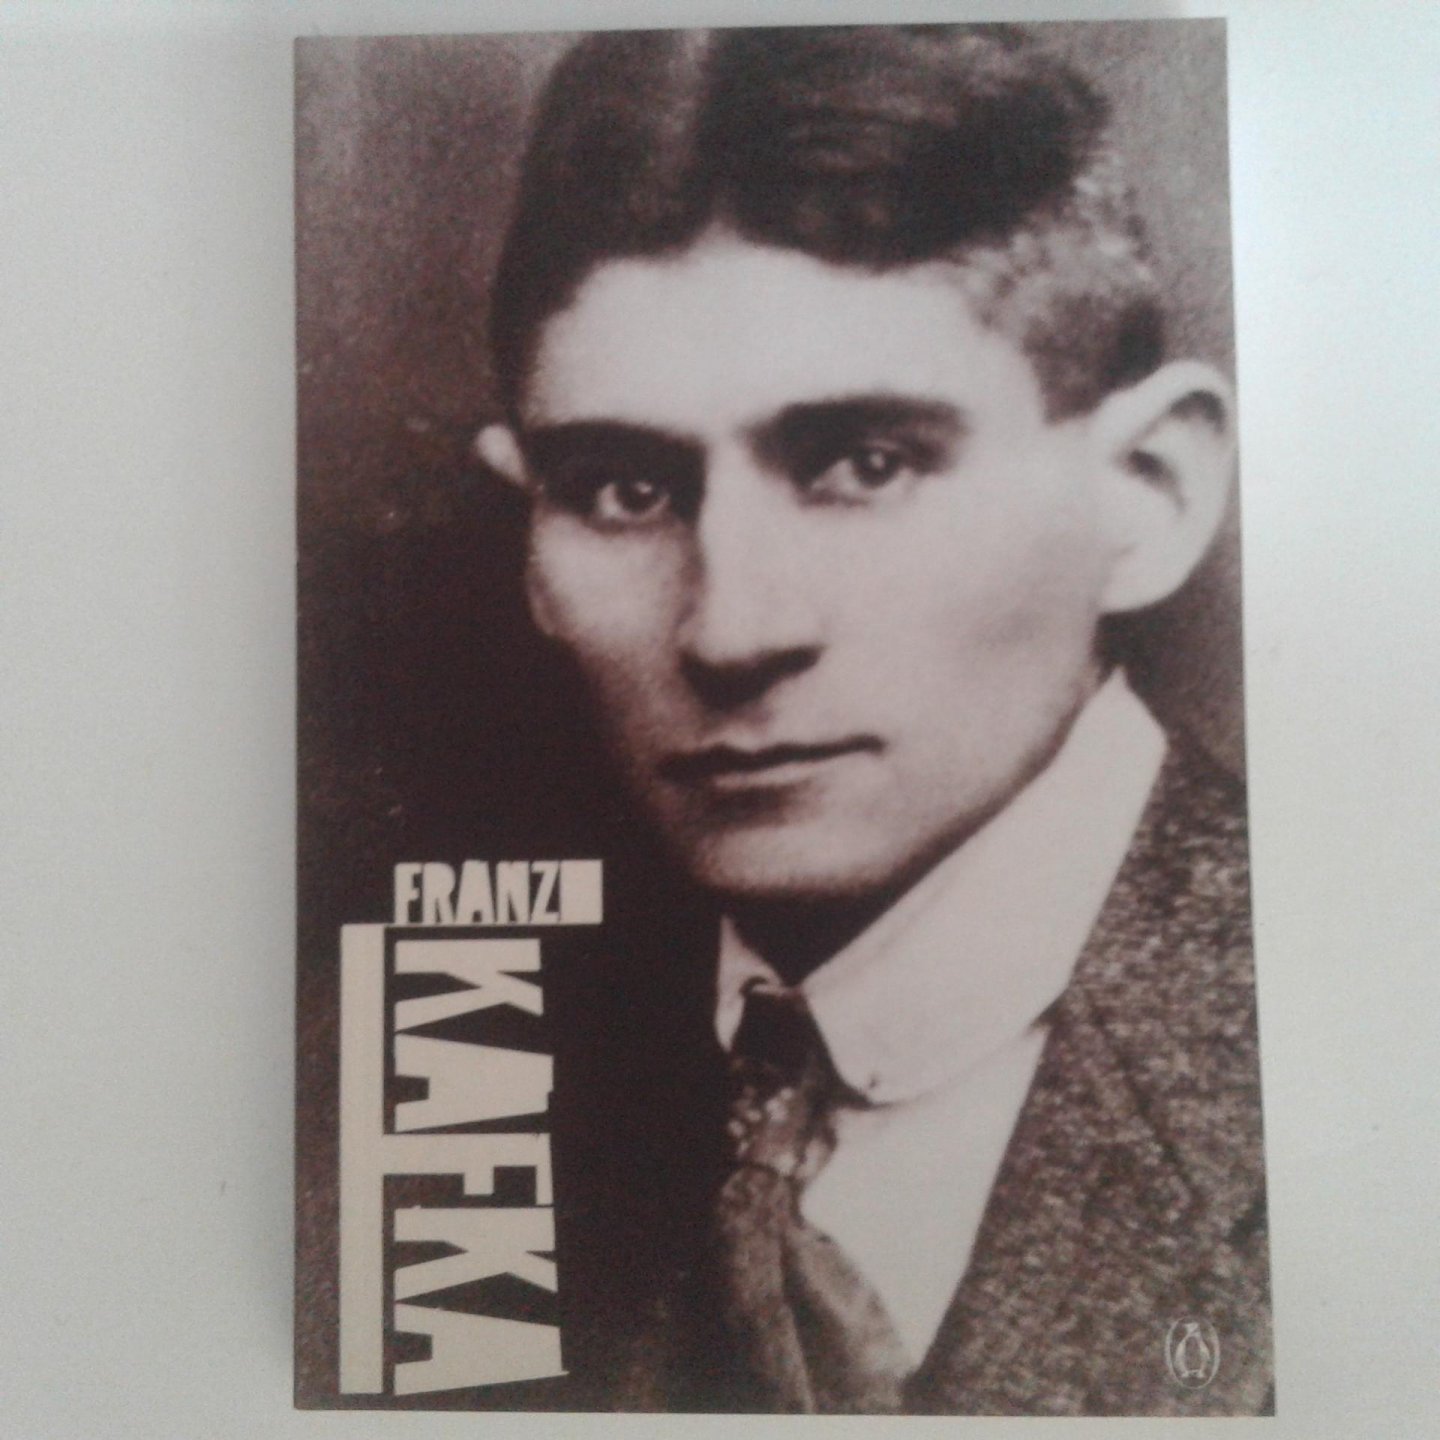 Adler, Jeremy - Adler ; Franz Kafka